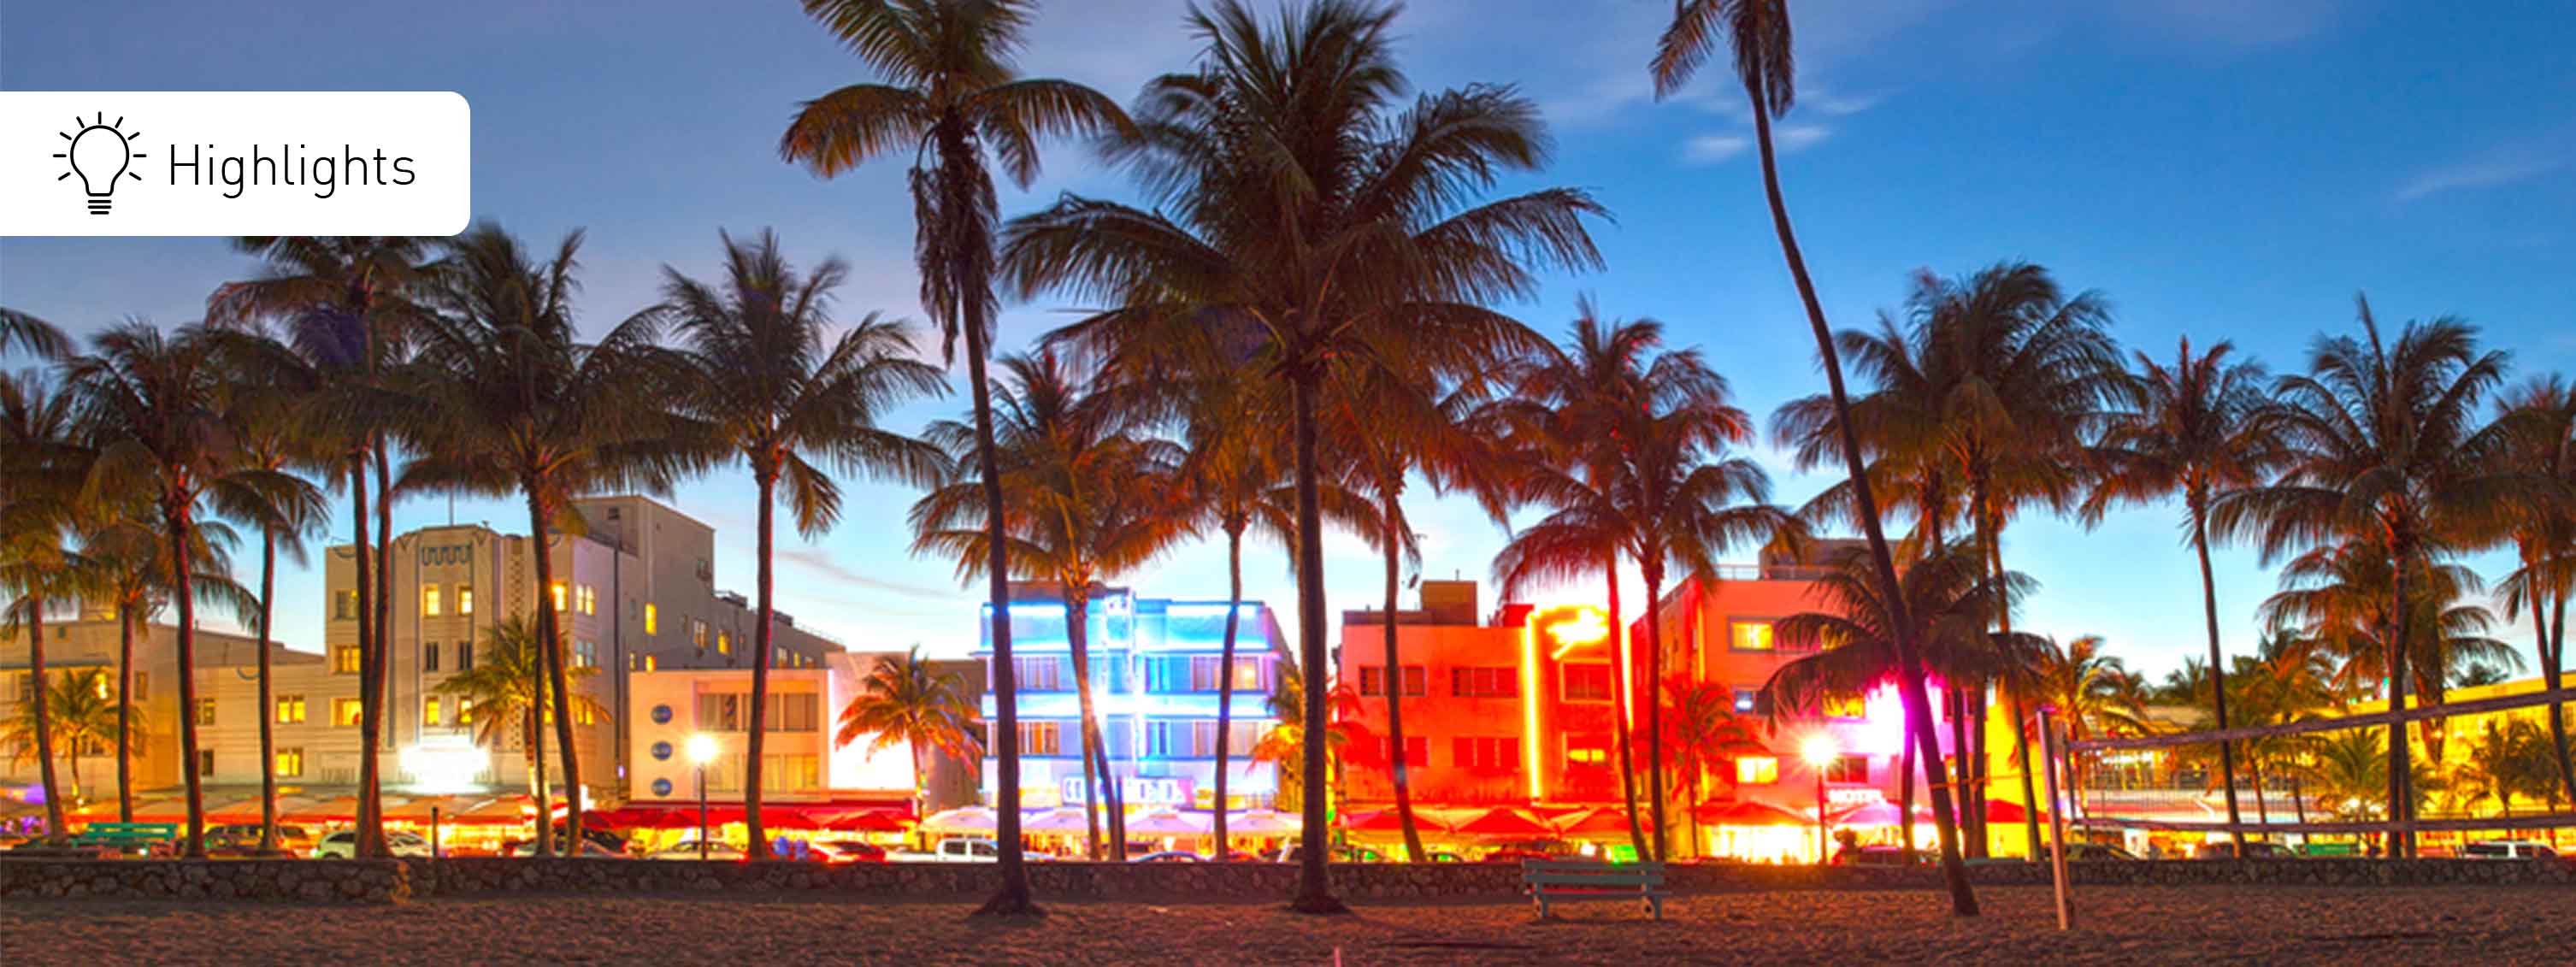 Miami Art Deco Drive